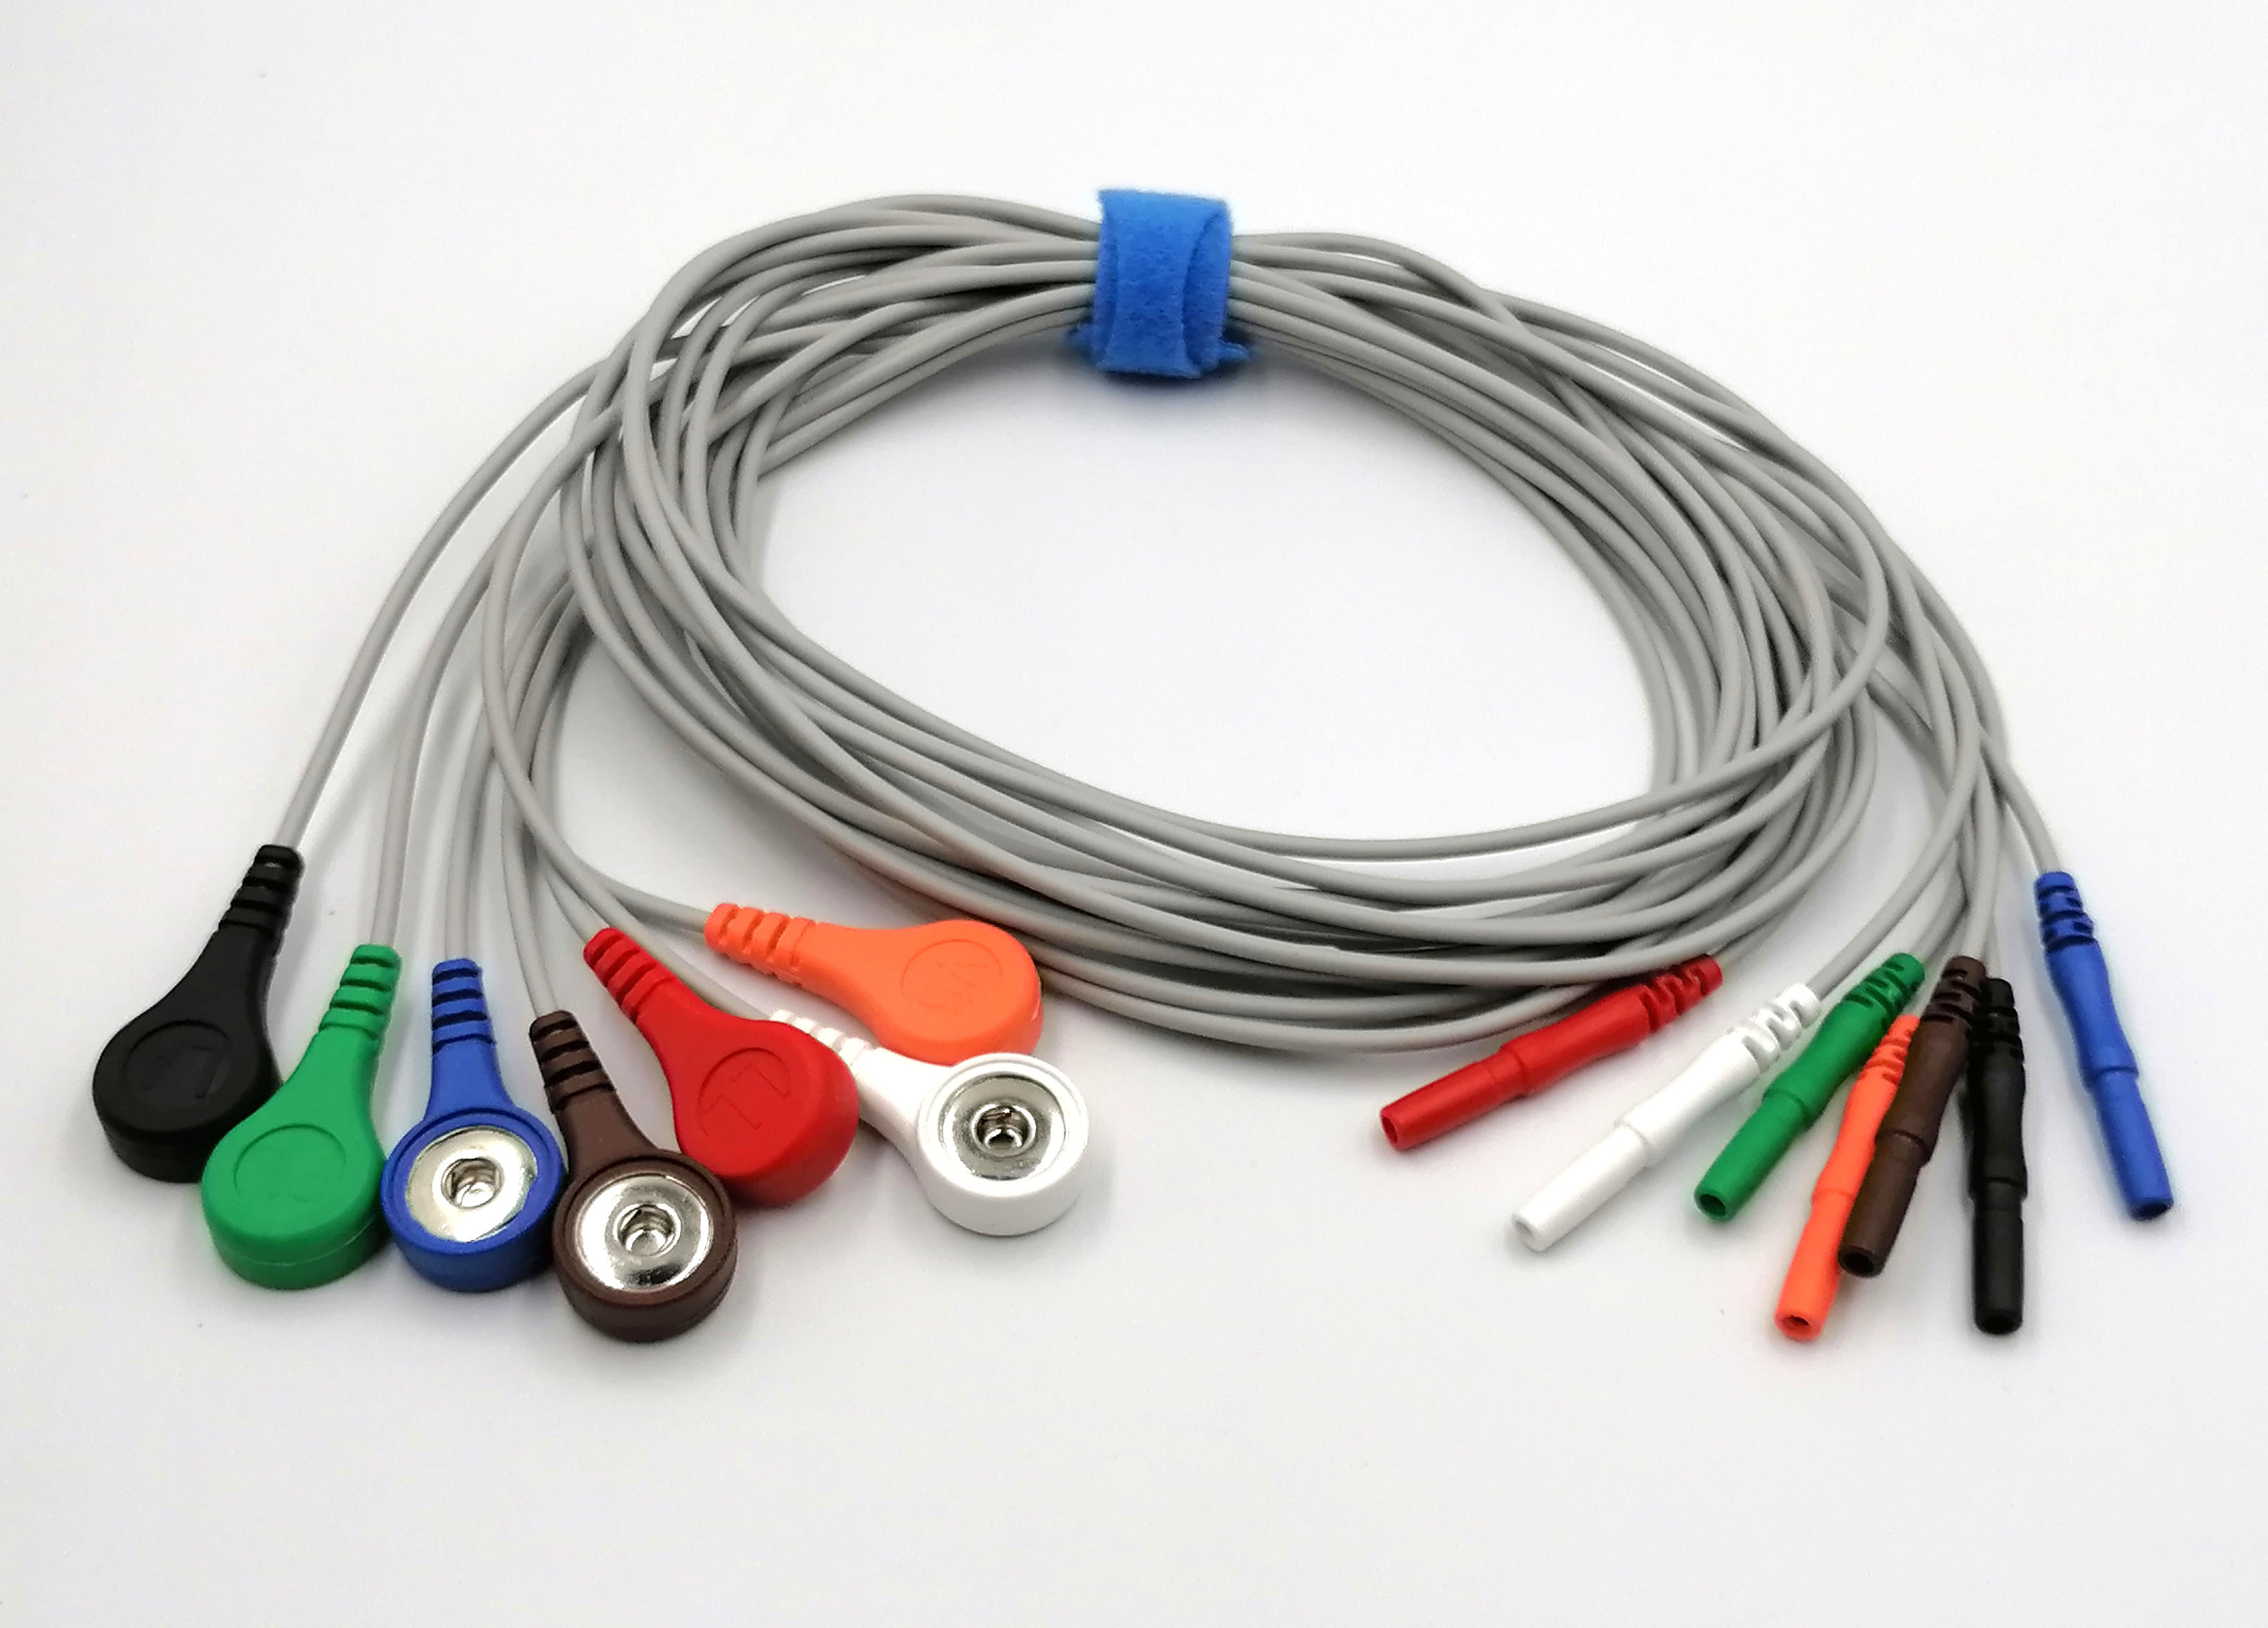 ЭКГ кабели отведений для суточного монитора Альтоника Махаон-03, новые модели, H467, H478, DIN 1,5мм, комплект из 7 отведений